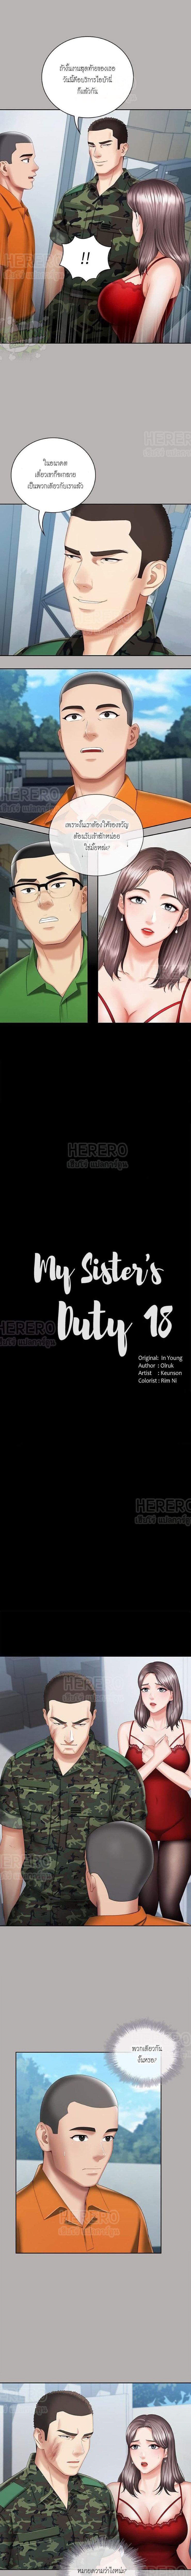 Sister's Duty 19 (1)